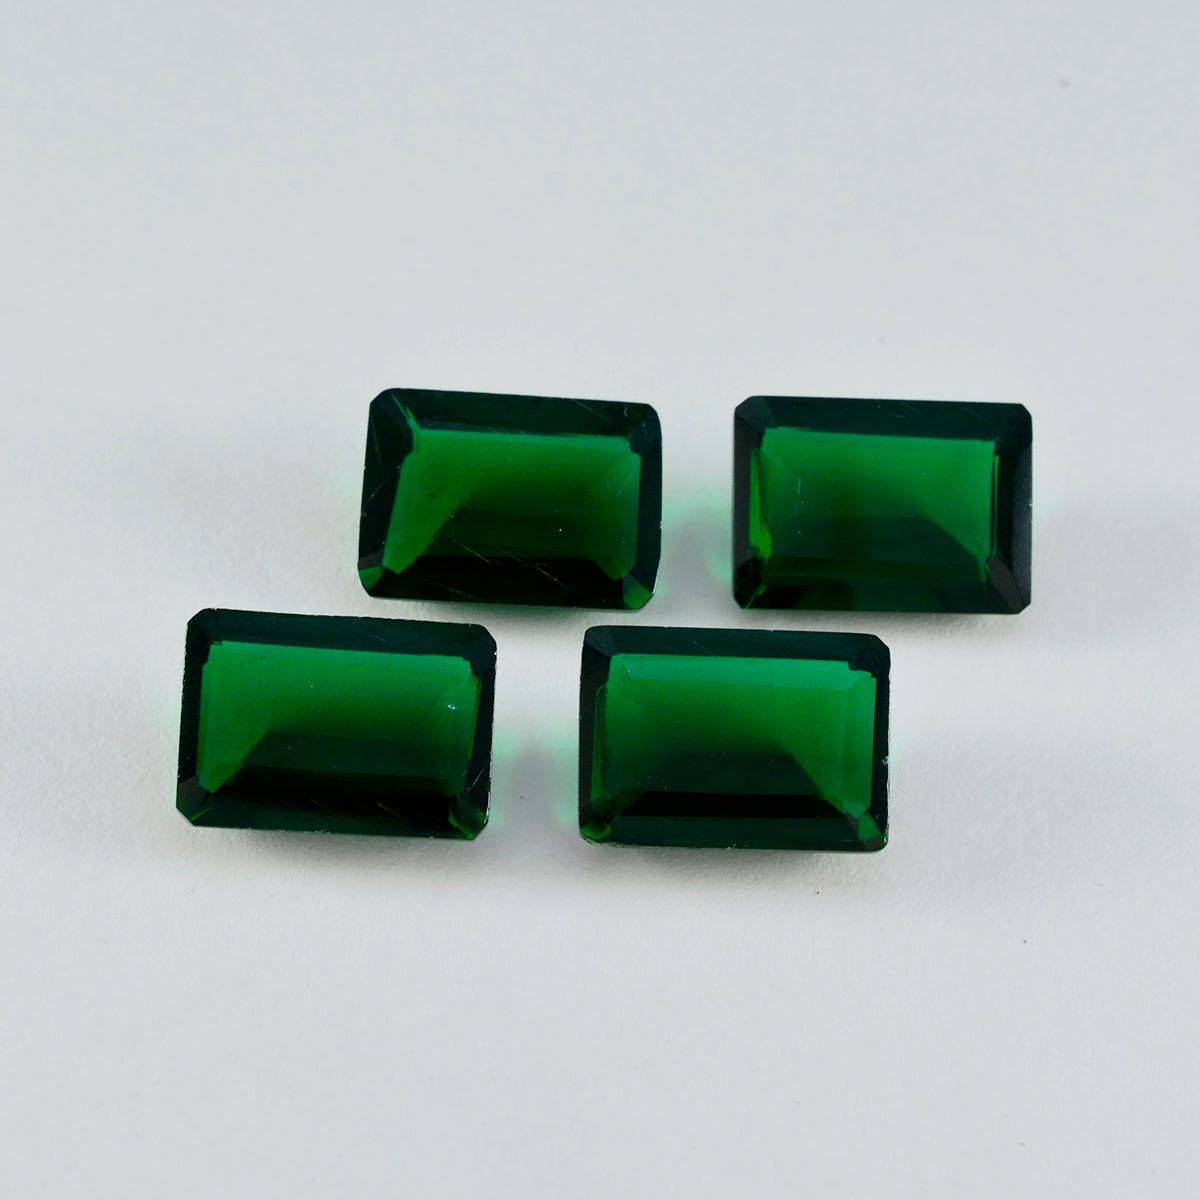 Riyogems 1 Stück grüner Smaragd, CZ, facettiert, 10 x 12 mm, Achteckform, hübscher Qualitätsedelstein